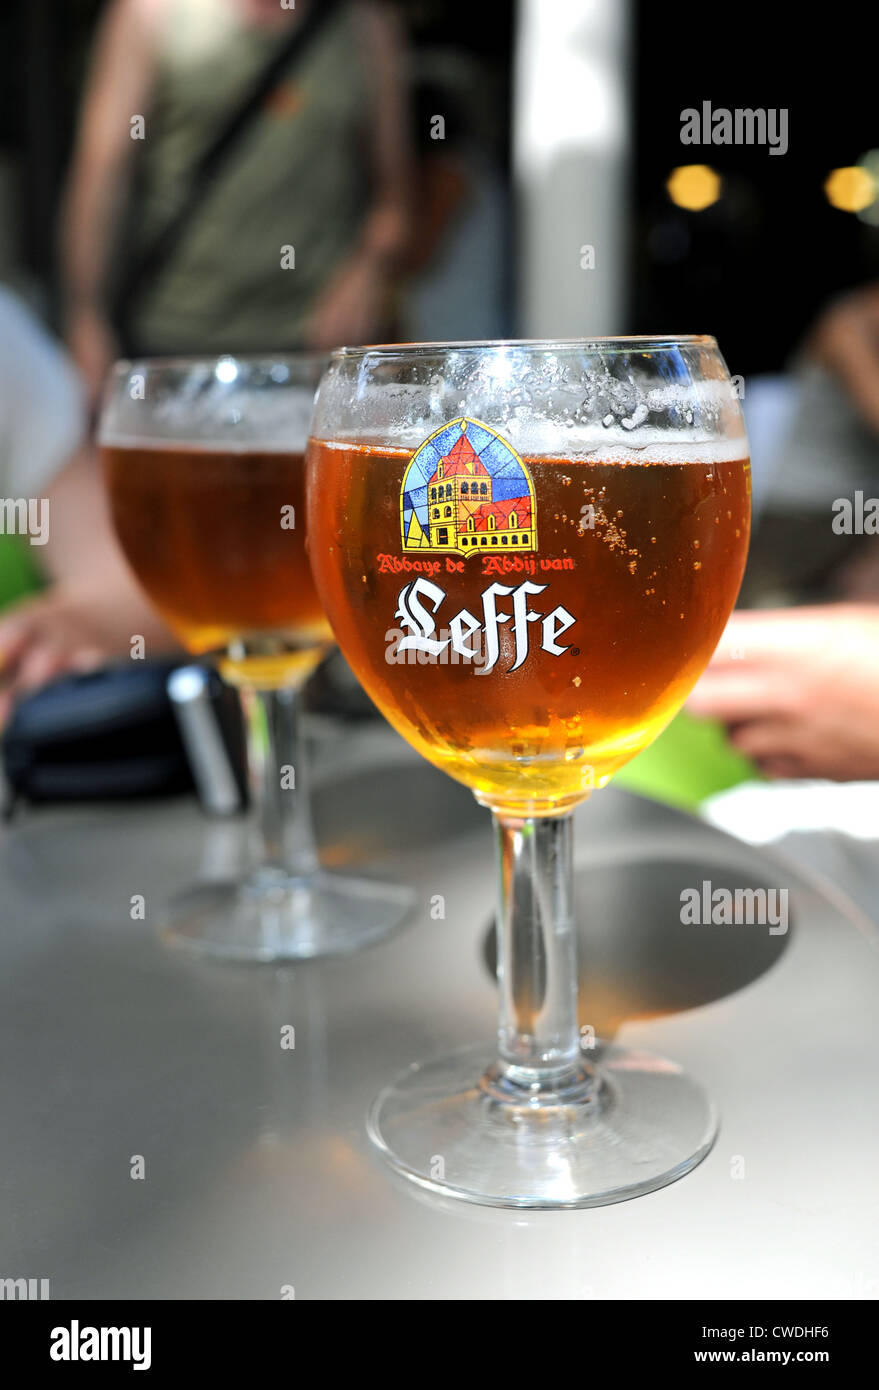 Verres de bière Leffe, est servi dans un bar dans le Lot Région de South West France Europe Banque D'Images